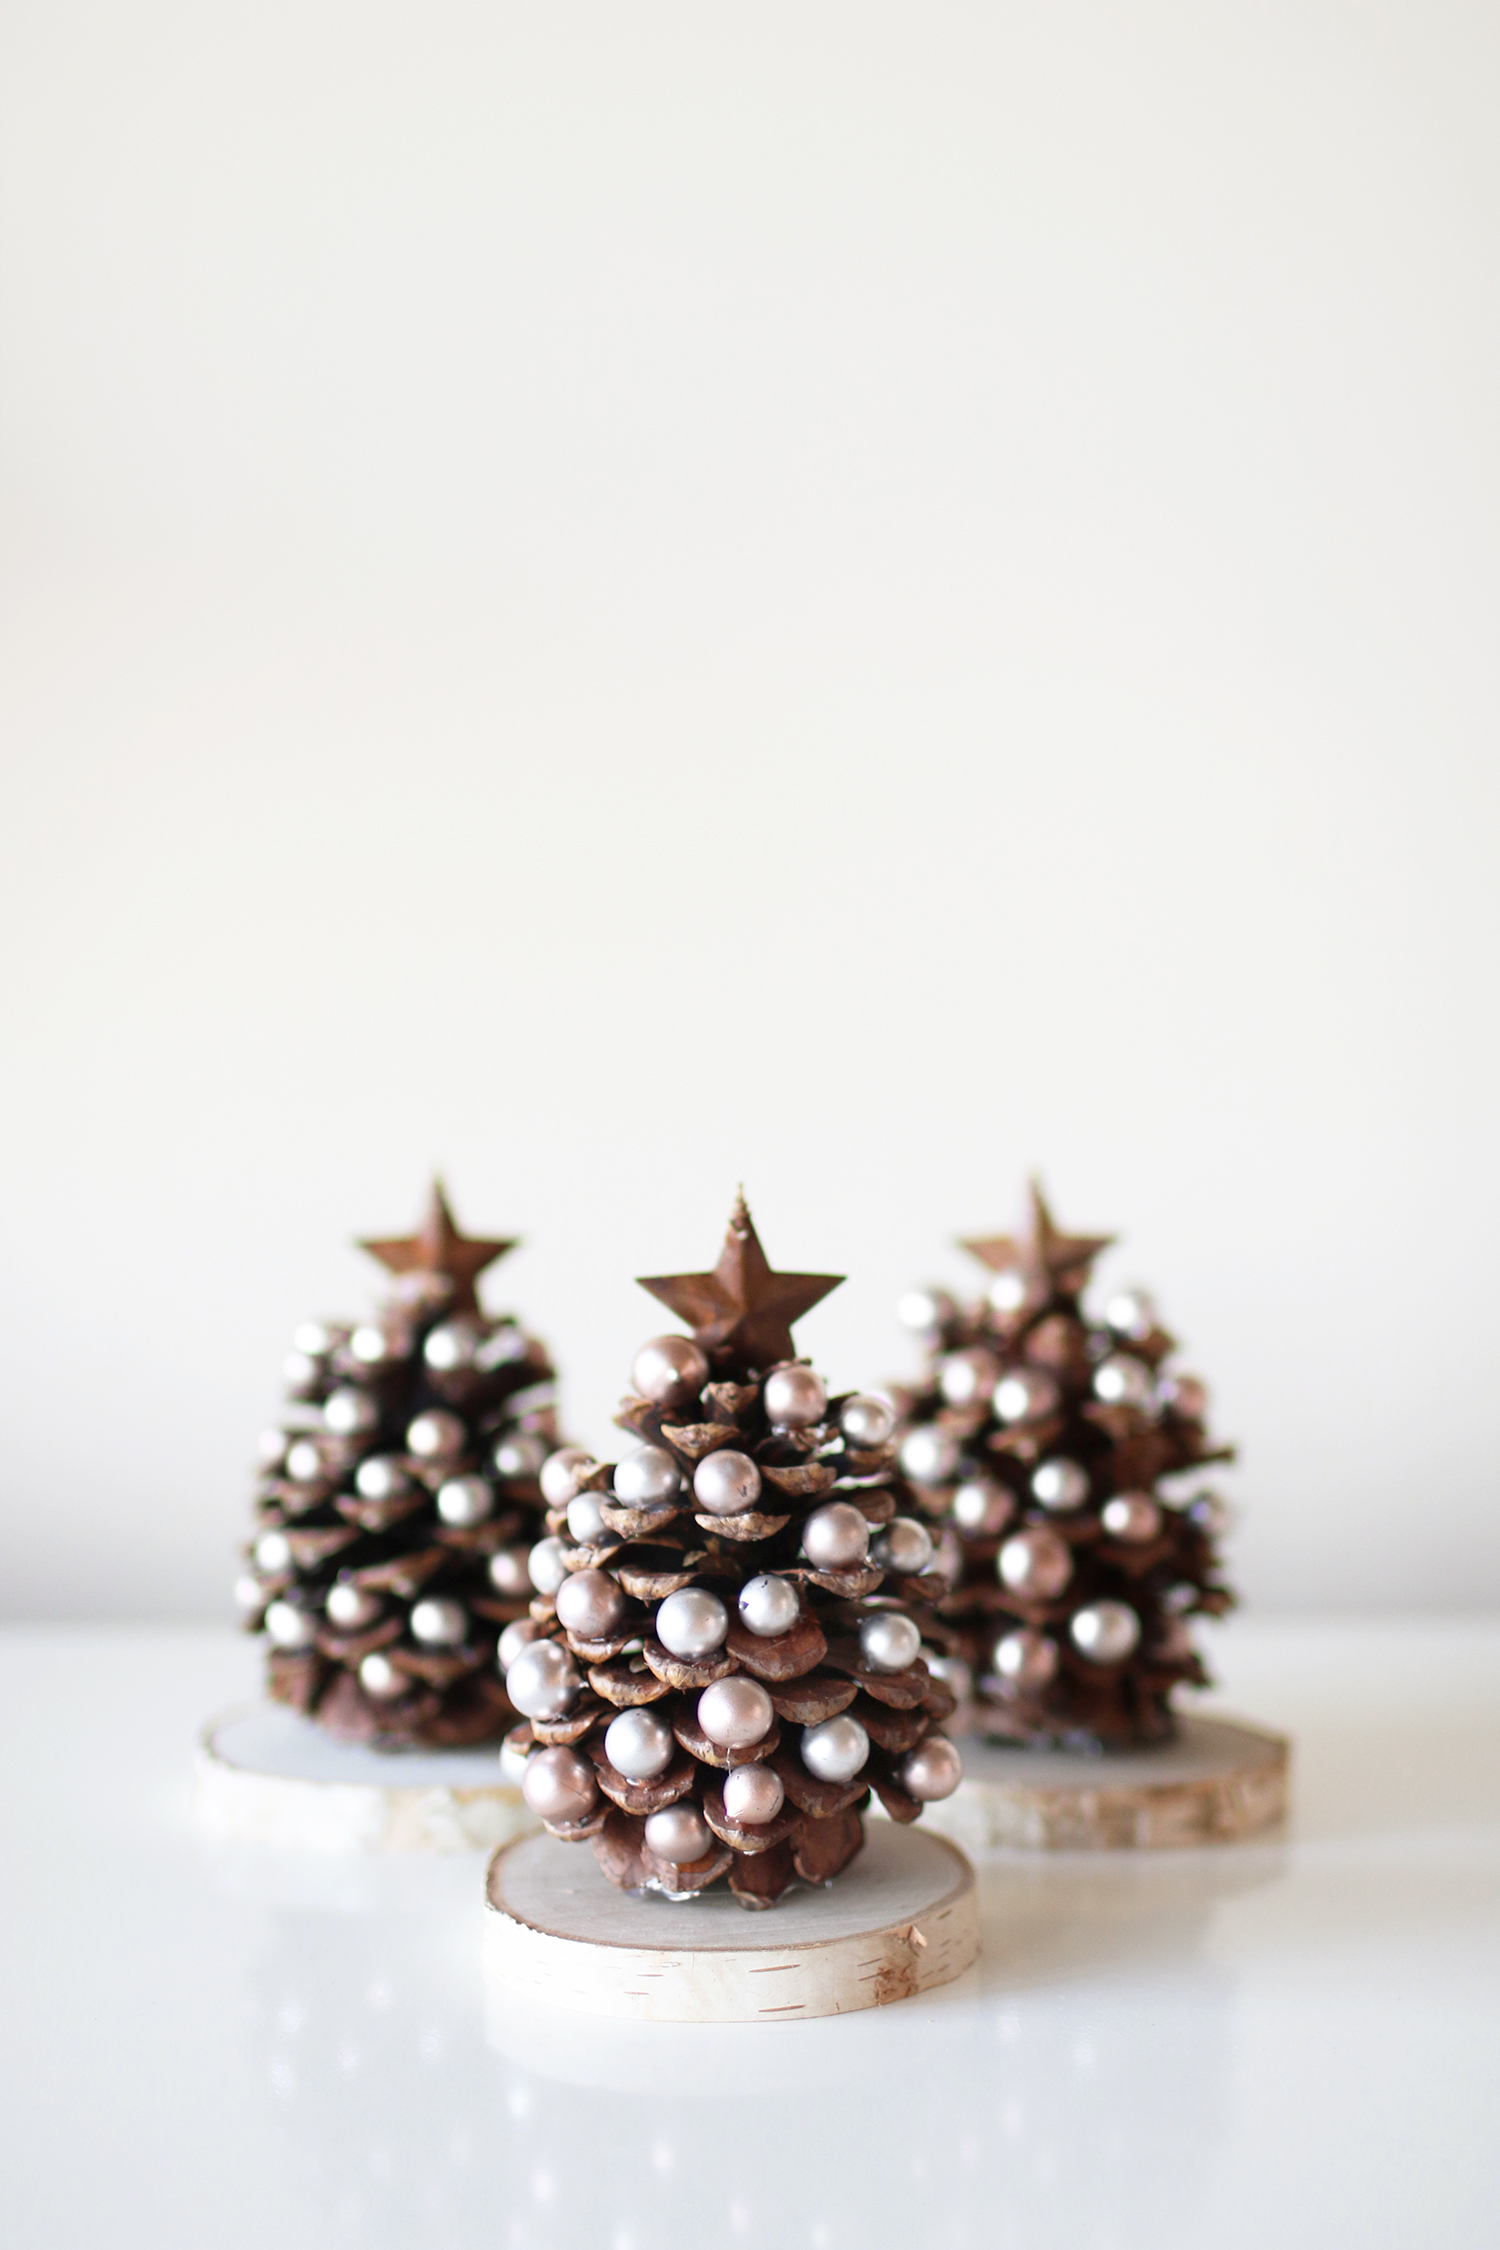 Pinecone Christmas Tree Craft